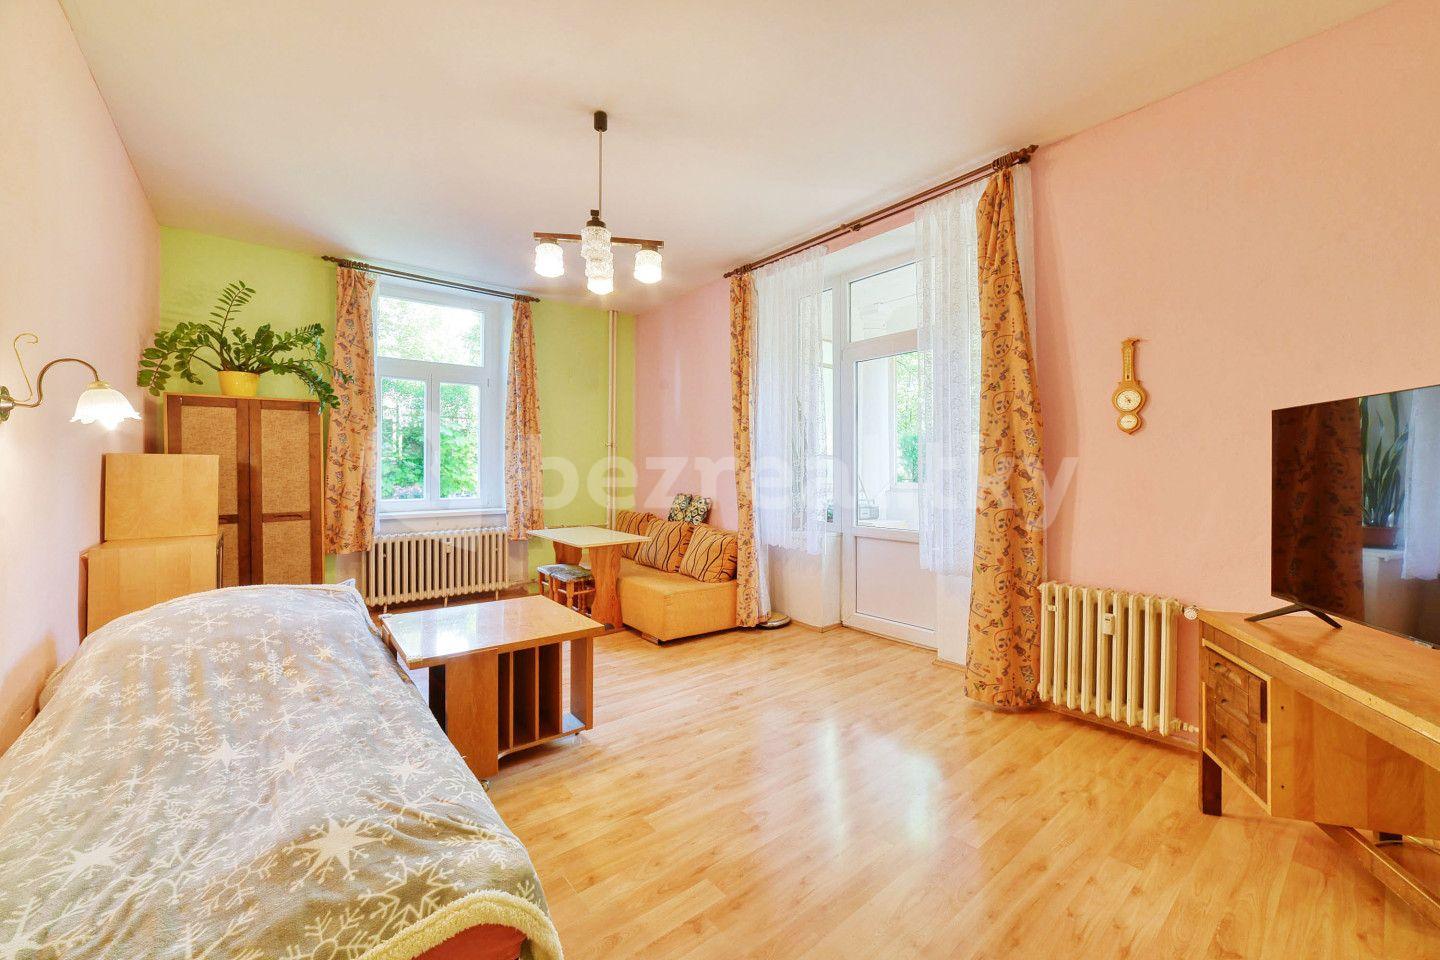 3 bedroom flat for sale, 84 m², Karlovarská, Mariánské Lázně, Karlovarský Region